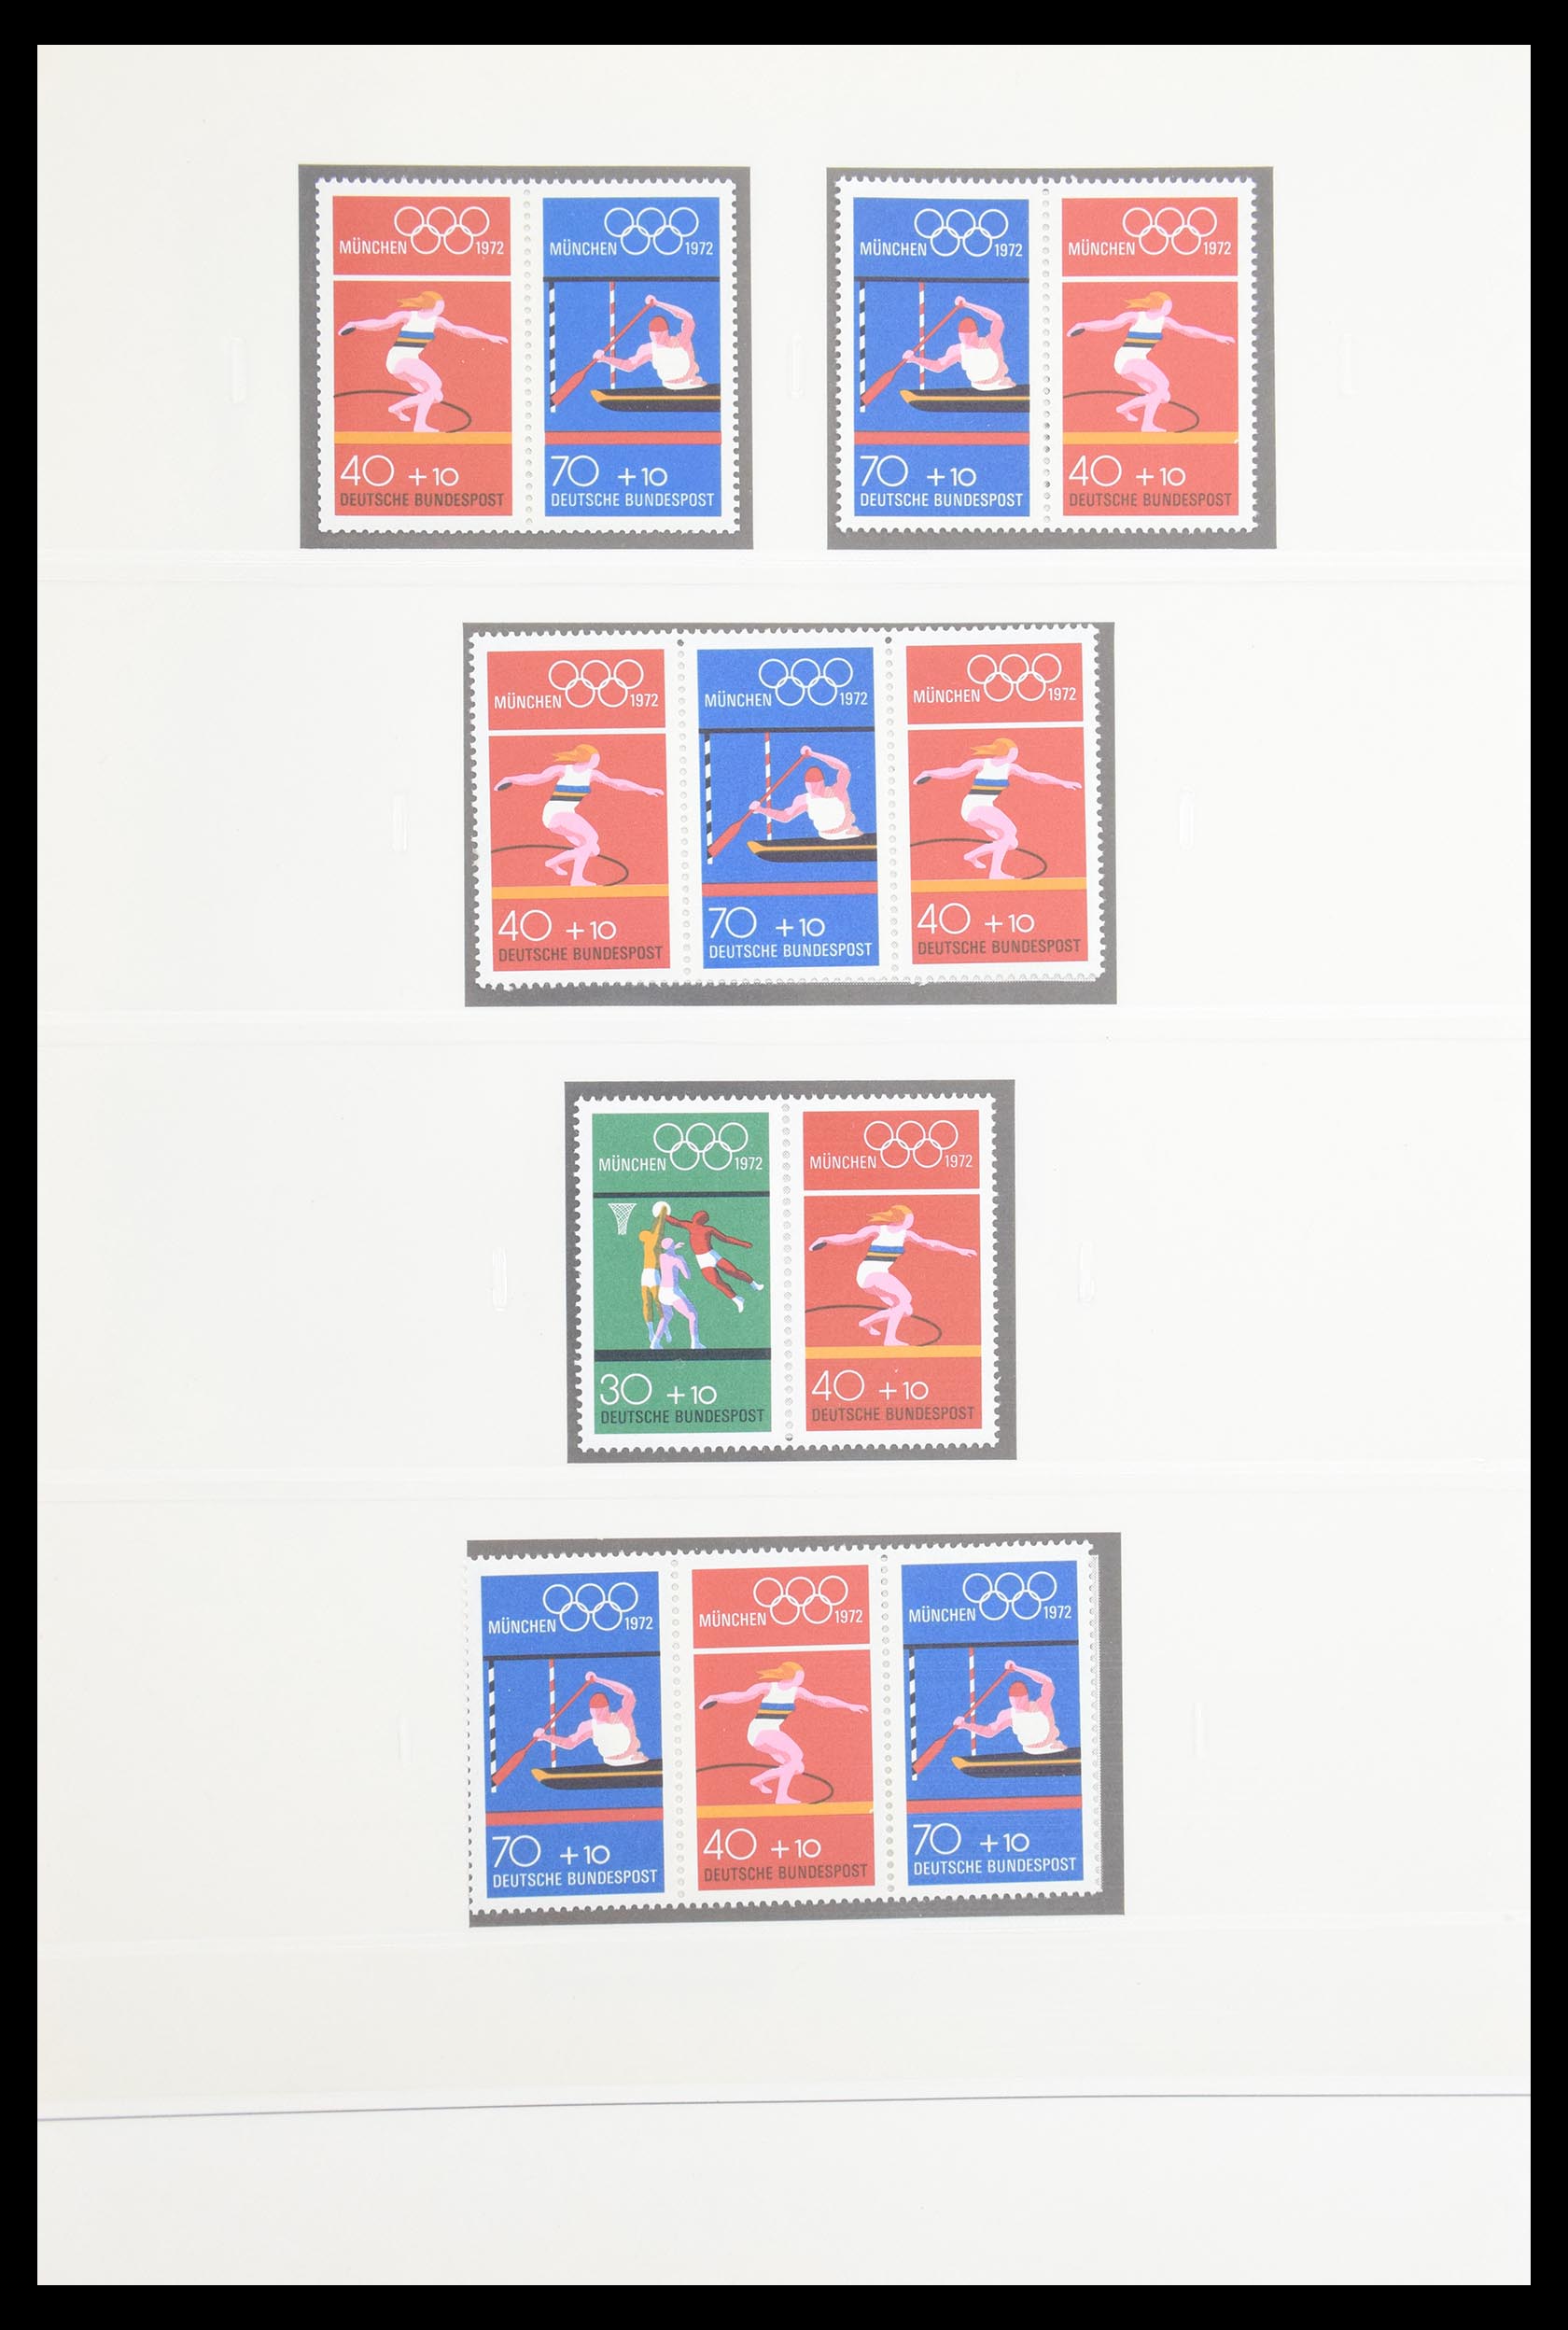 30605 033 - 30605 Bundespost combinations 1951-1974.